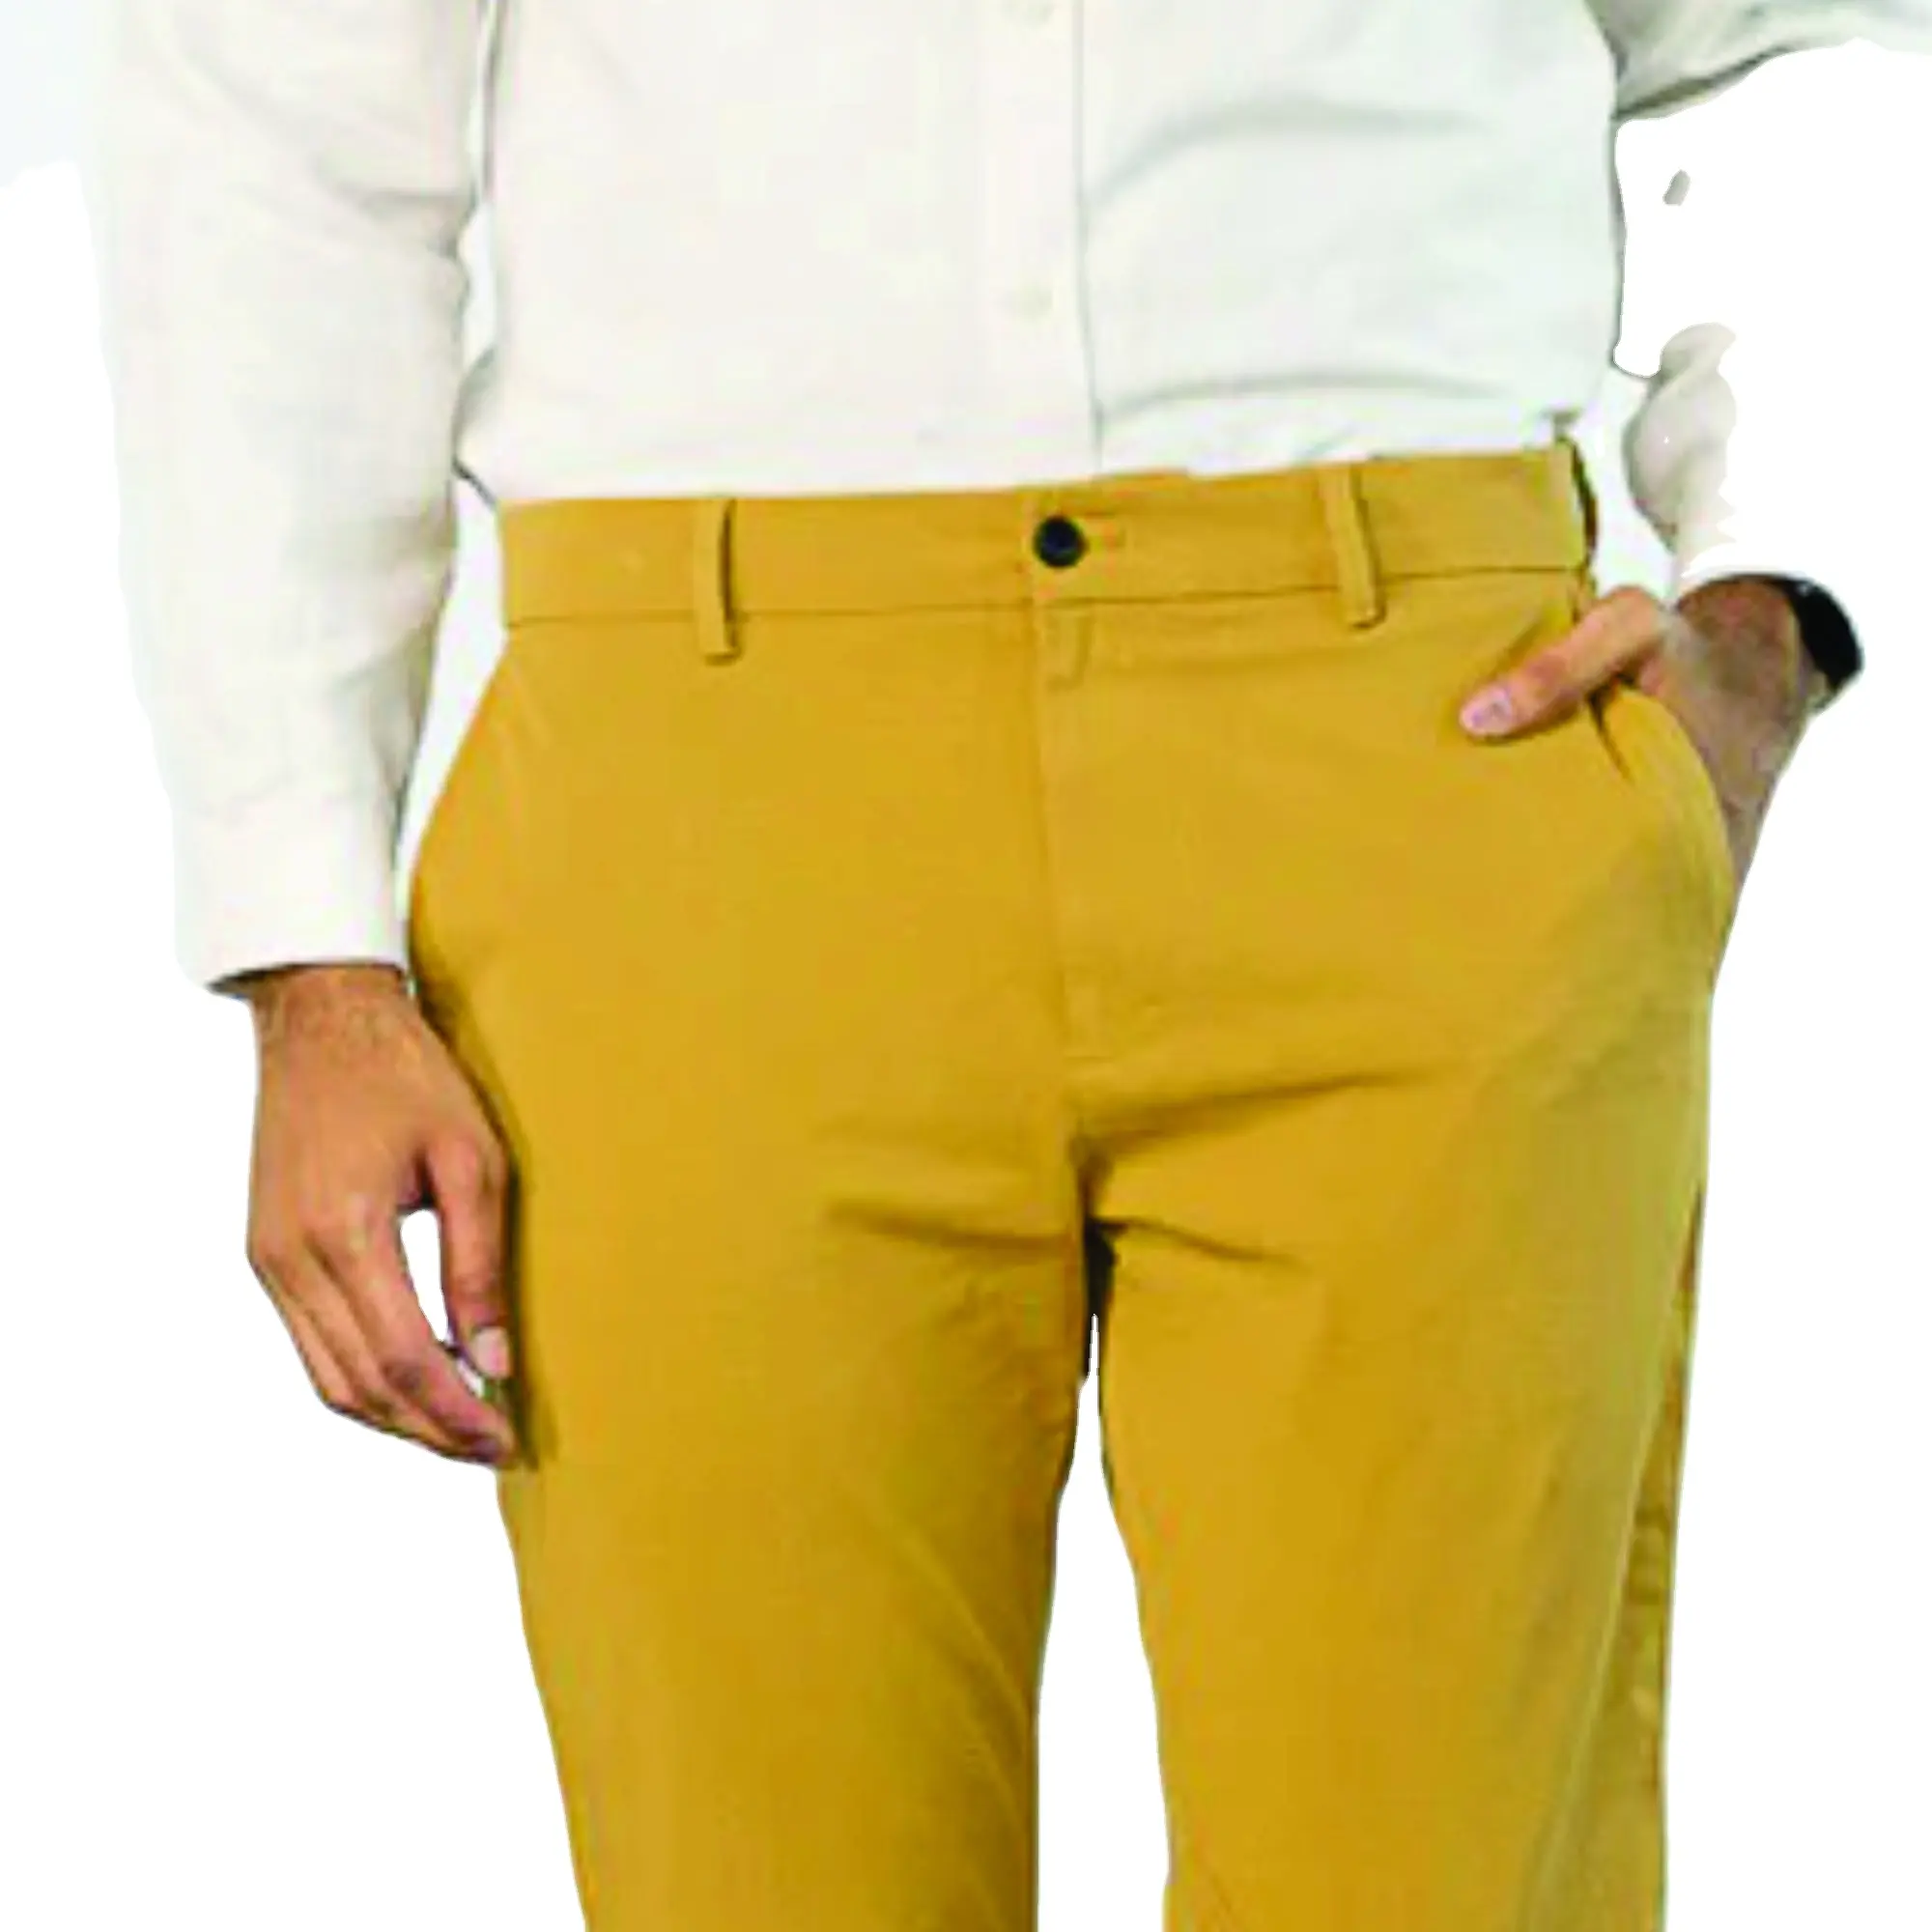 मुख्य Chinos पतलून पुरुषों उत्पादों पुरुषों की बहु-रंग आकस्मिक पैंट शुद्ध रंग के लिए Chinos कपास पैंट पुरुषों